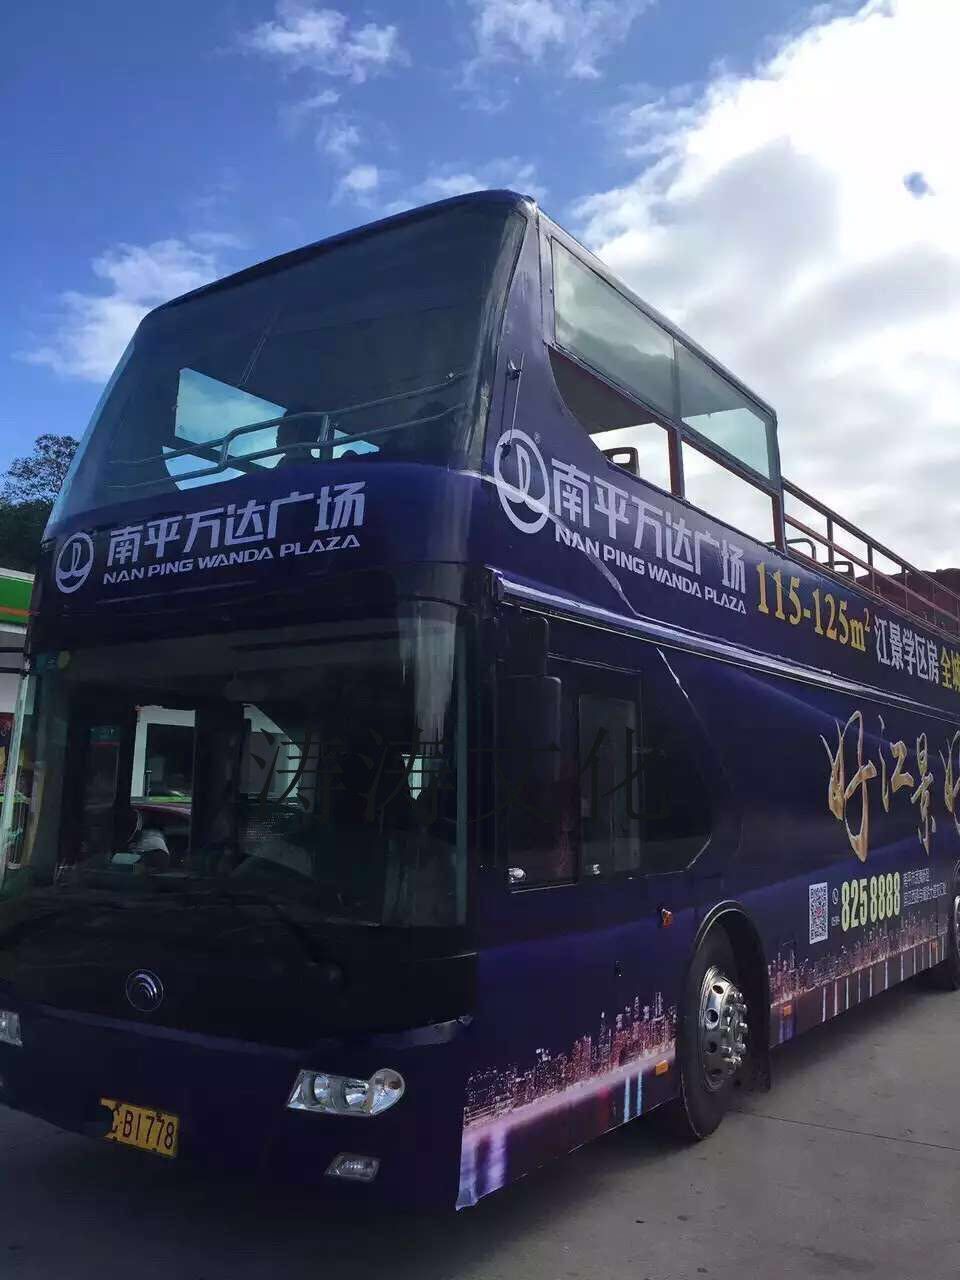 2019大型双层巴士出租 双层观光大巴租赁 租双层巴士巡游